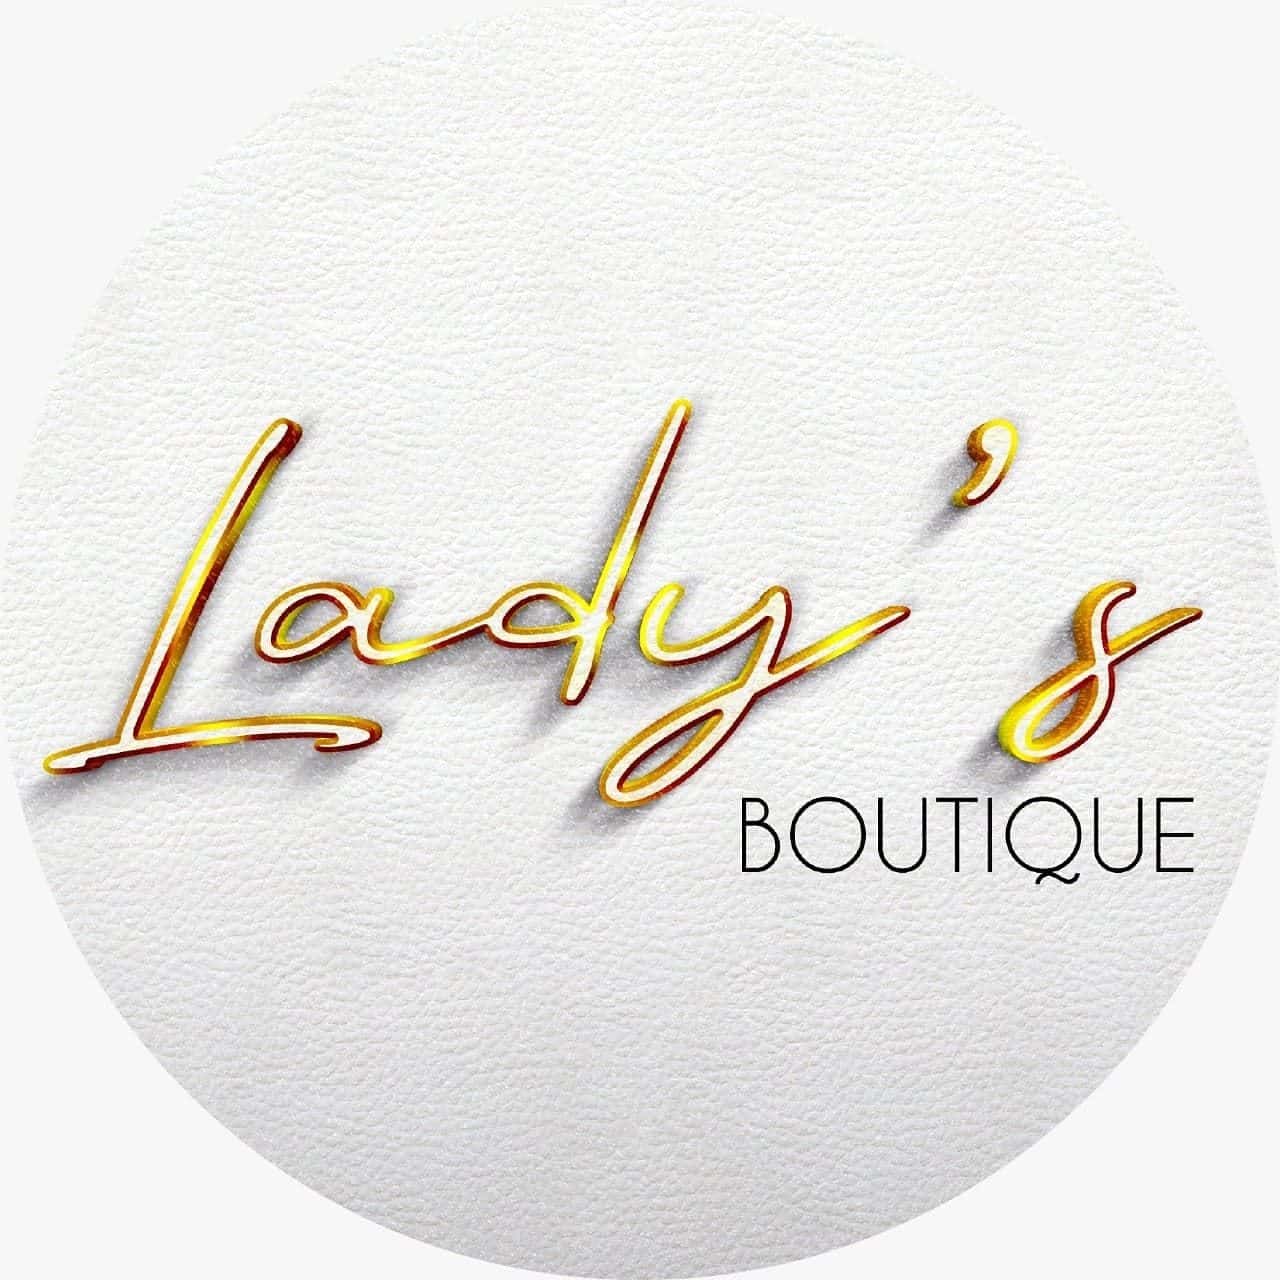 Lady's boutique